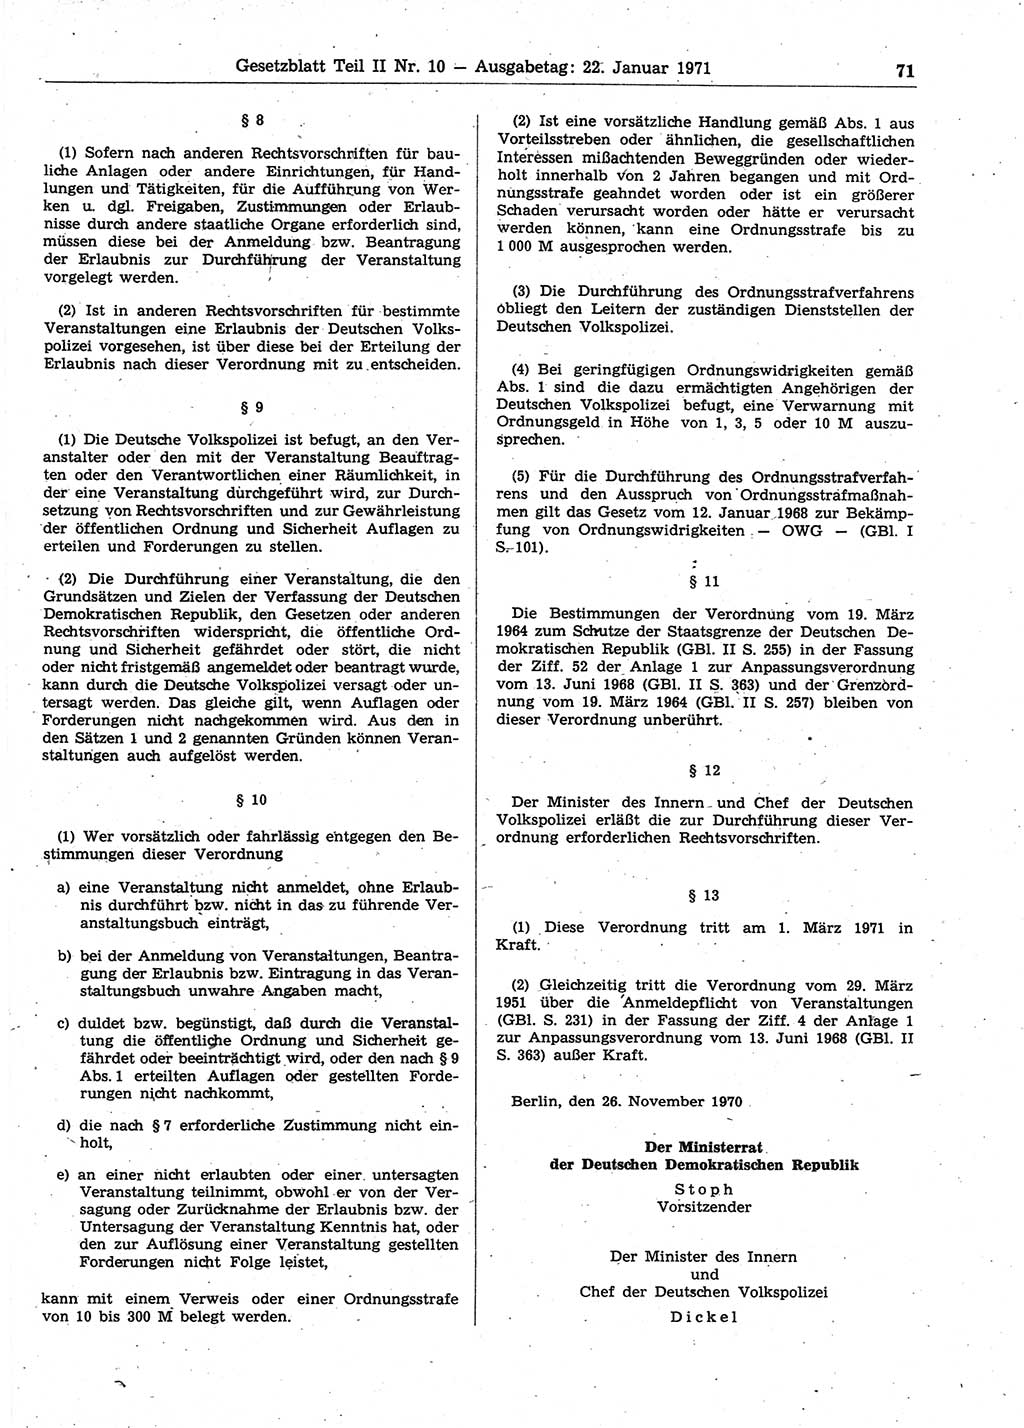 Gesetzblatt (GBl.) der Deutschen Demokratischen Republik (DDR) Teil ⅠⅠ 1971, Seite 71 (GBl. DDR ⅠⅠ 1971, S. 71)